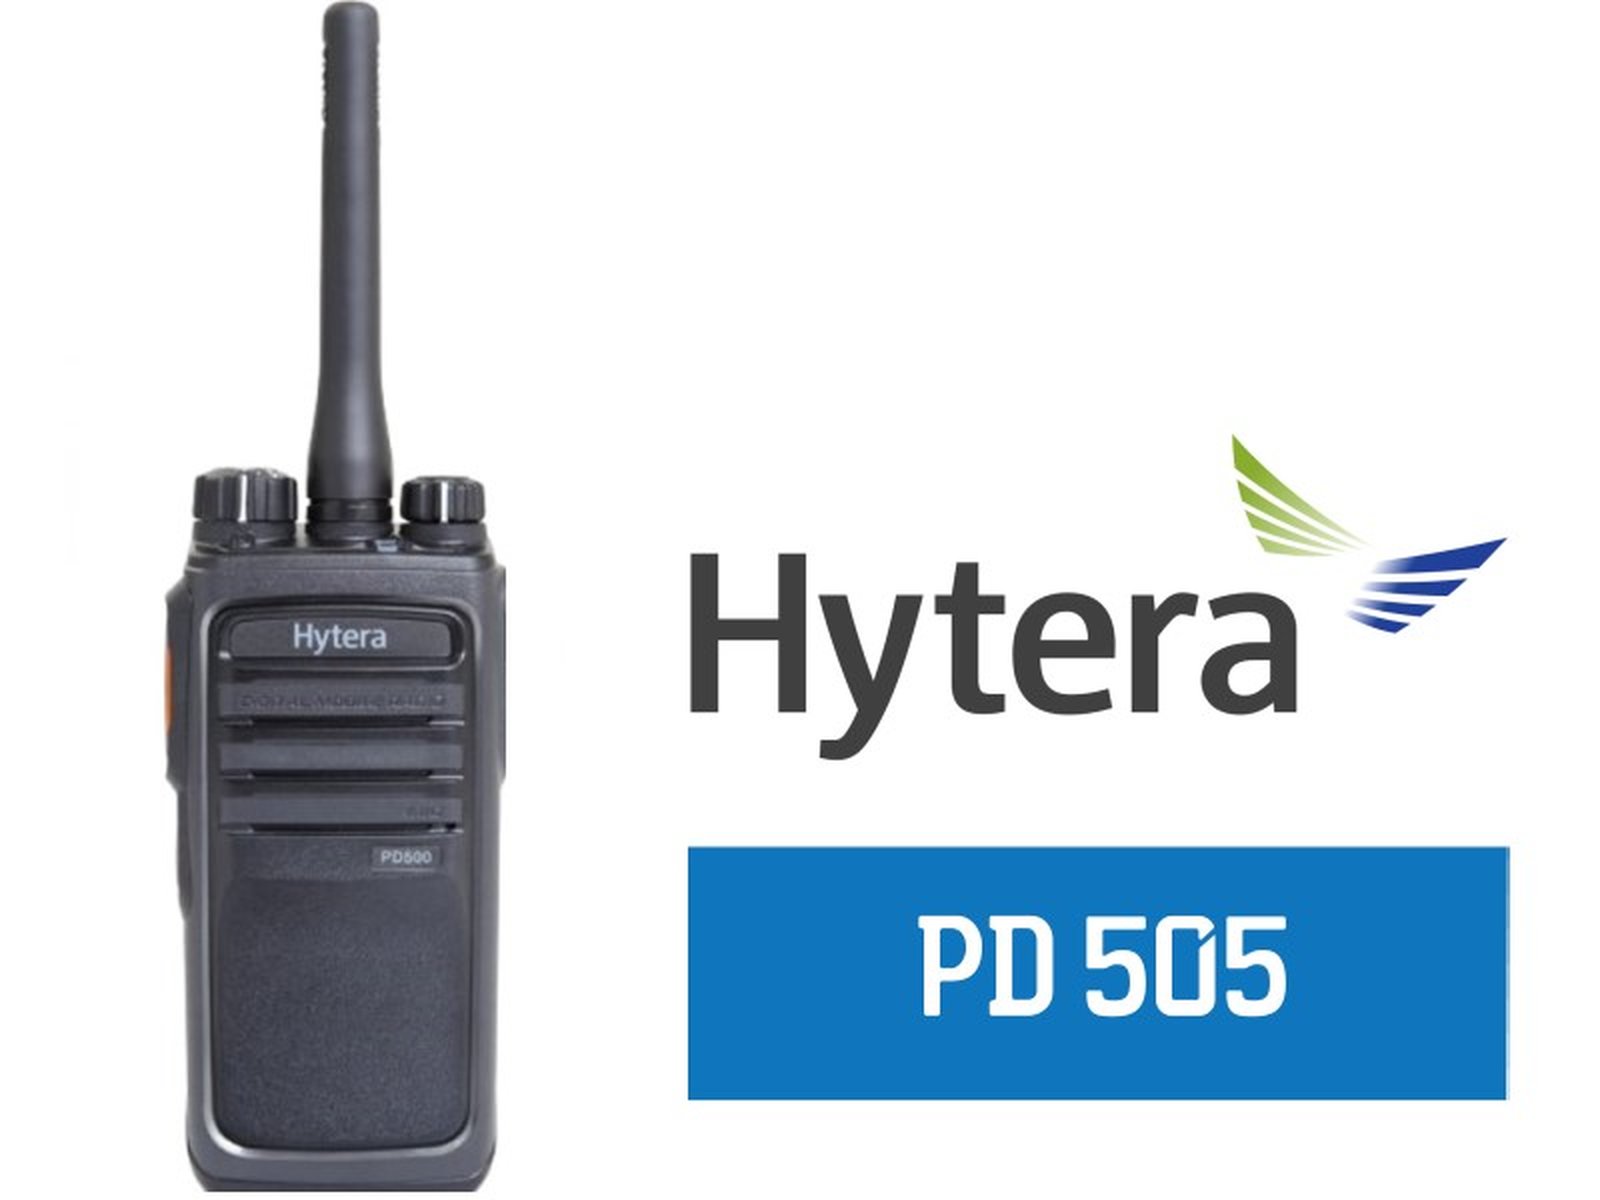 Hytera PD505